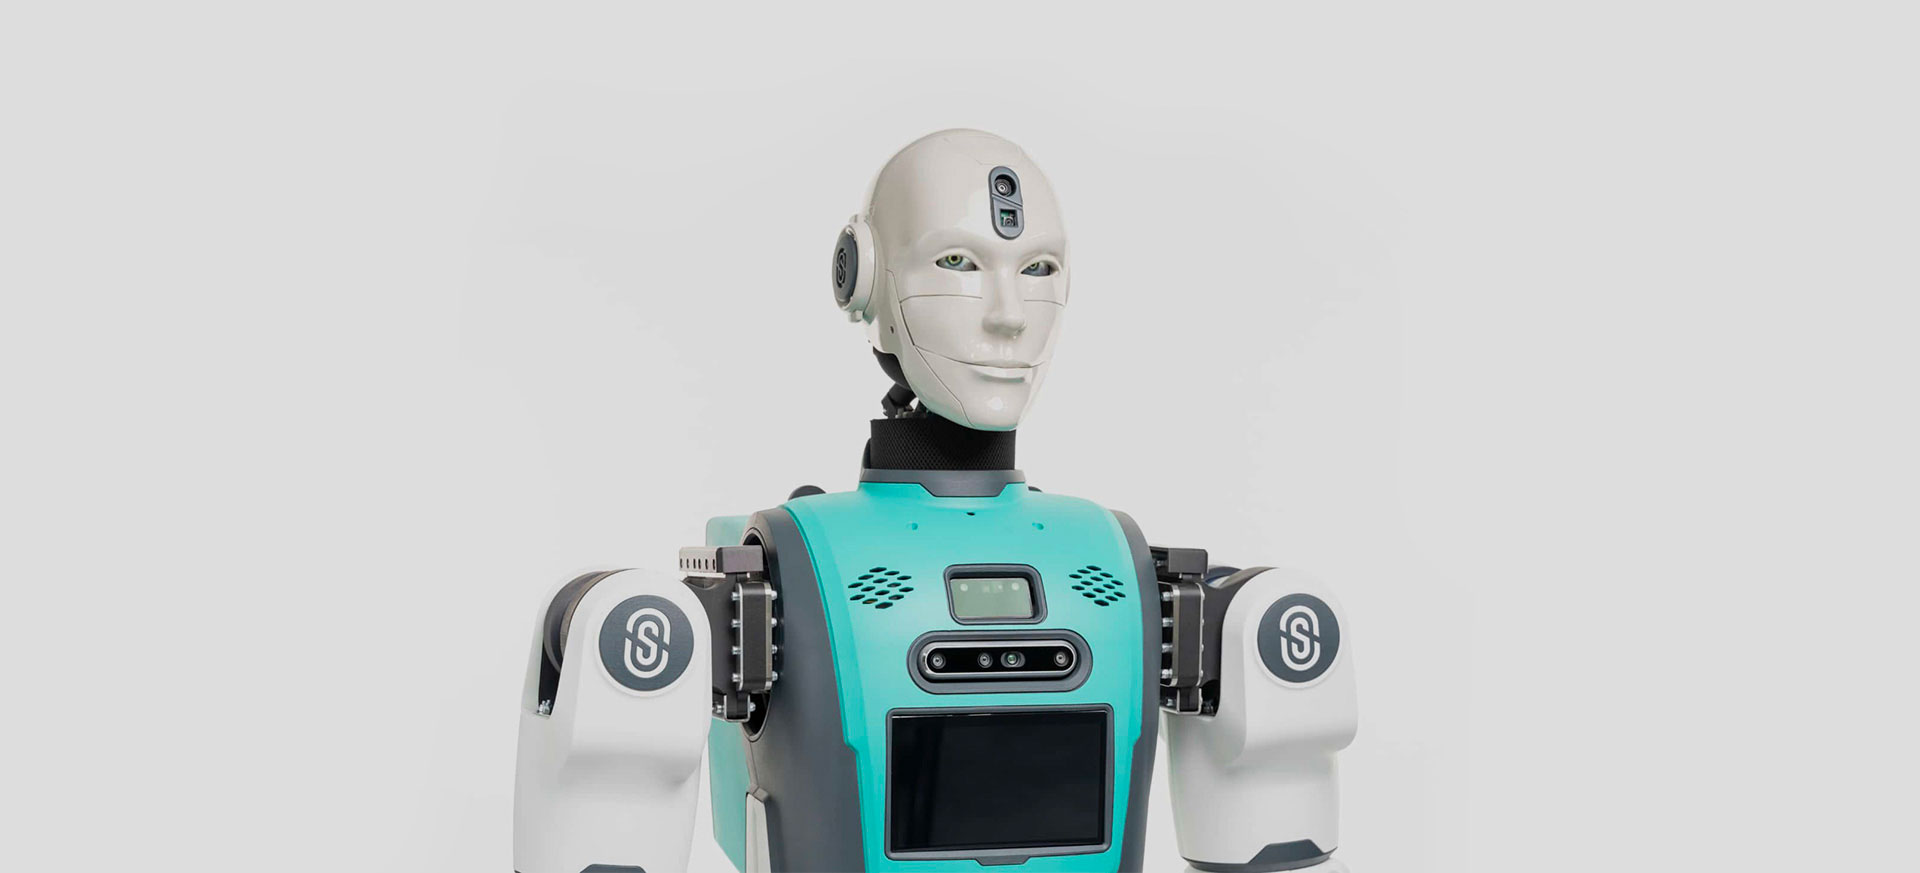 Robee, the humanoid robot